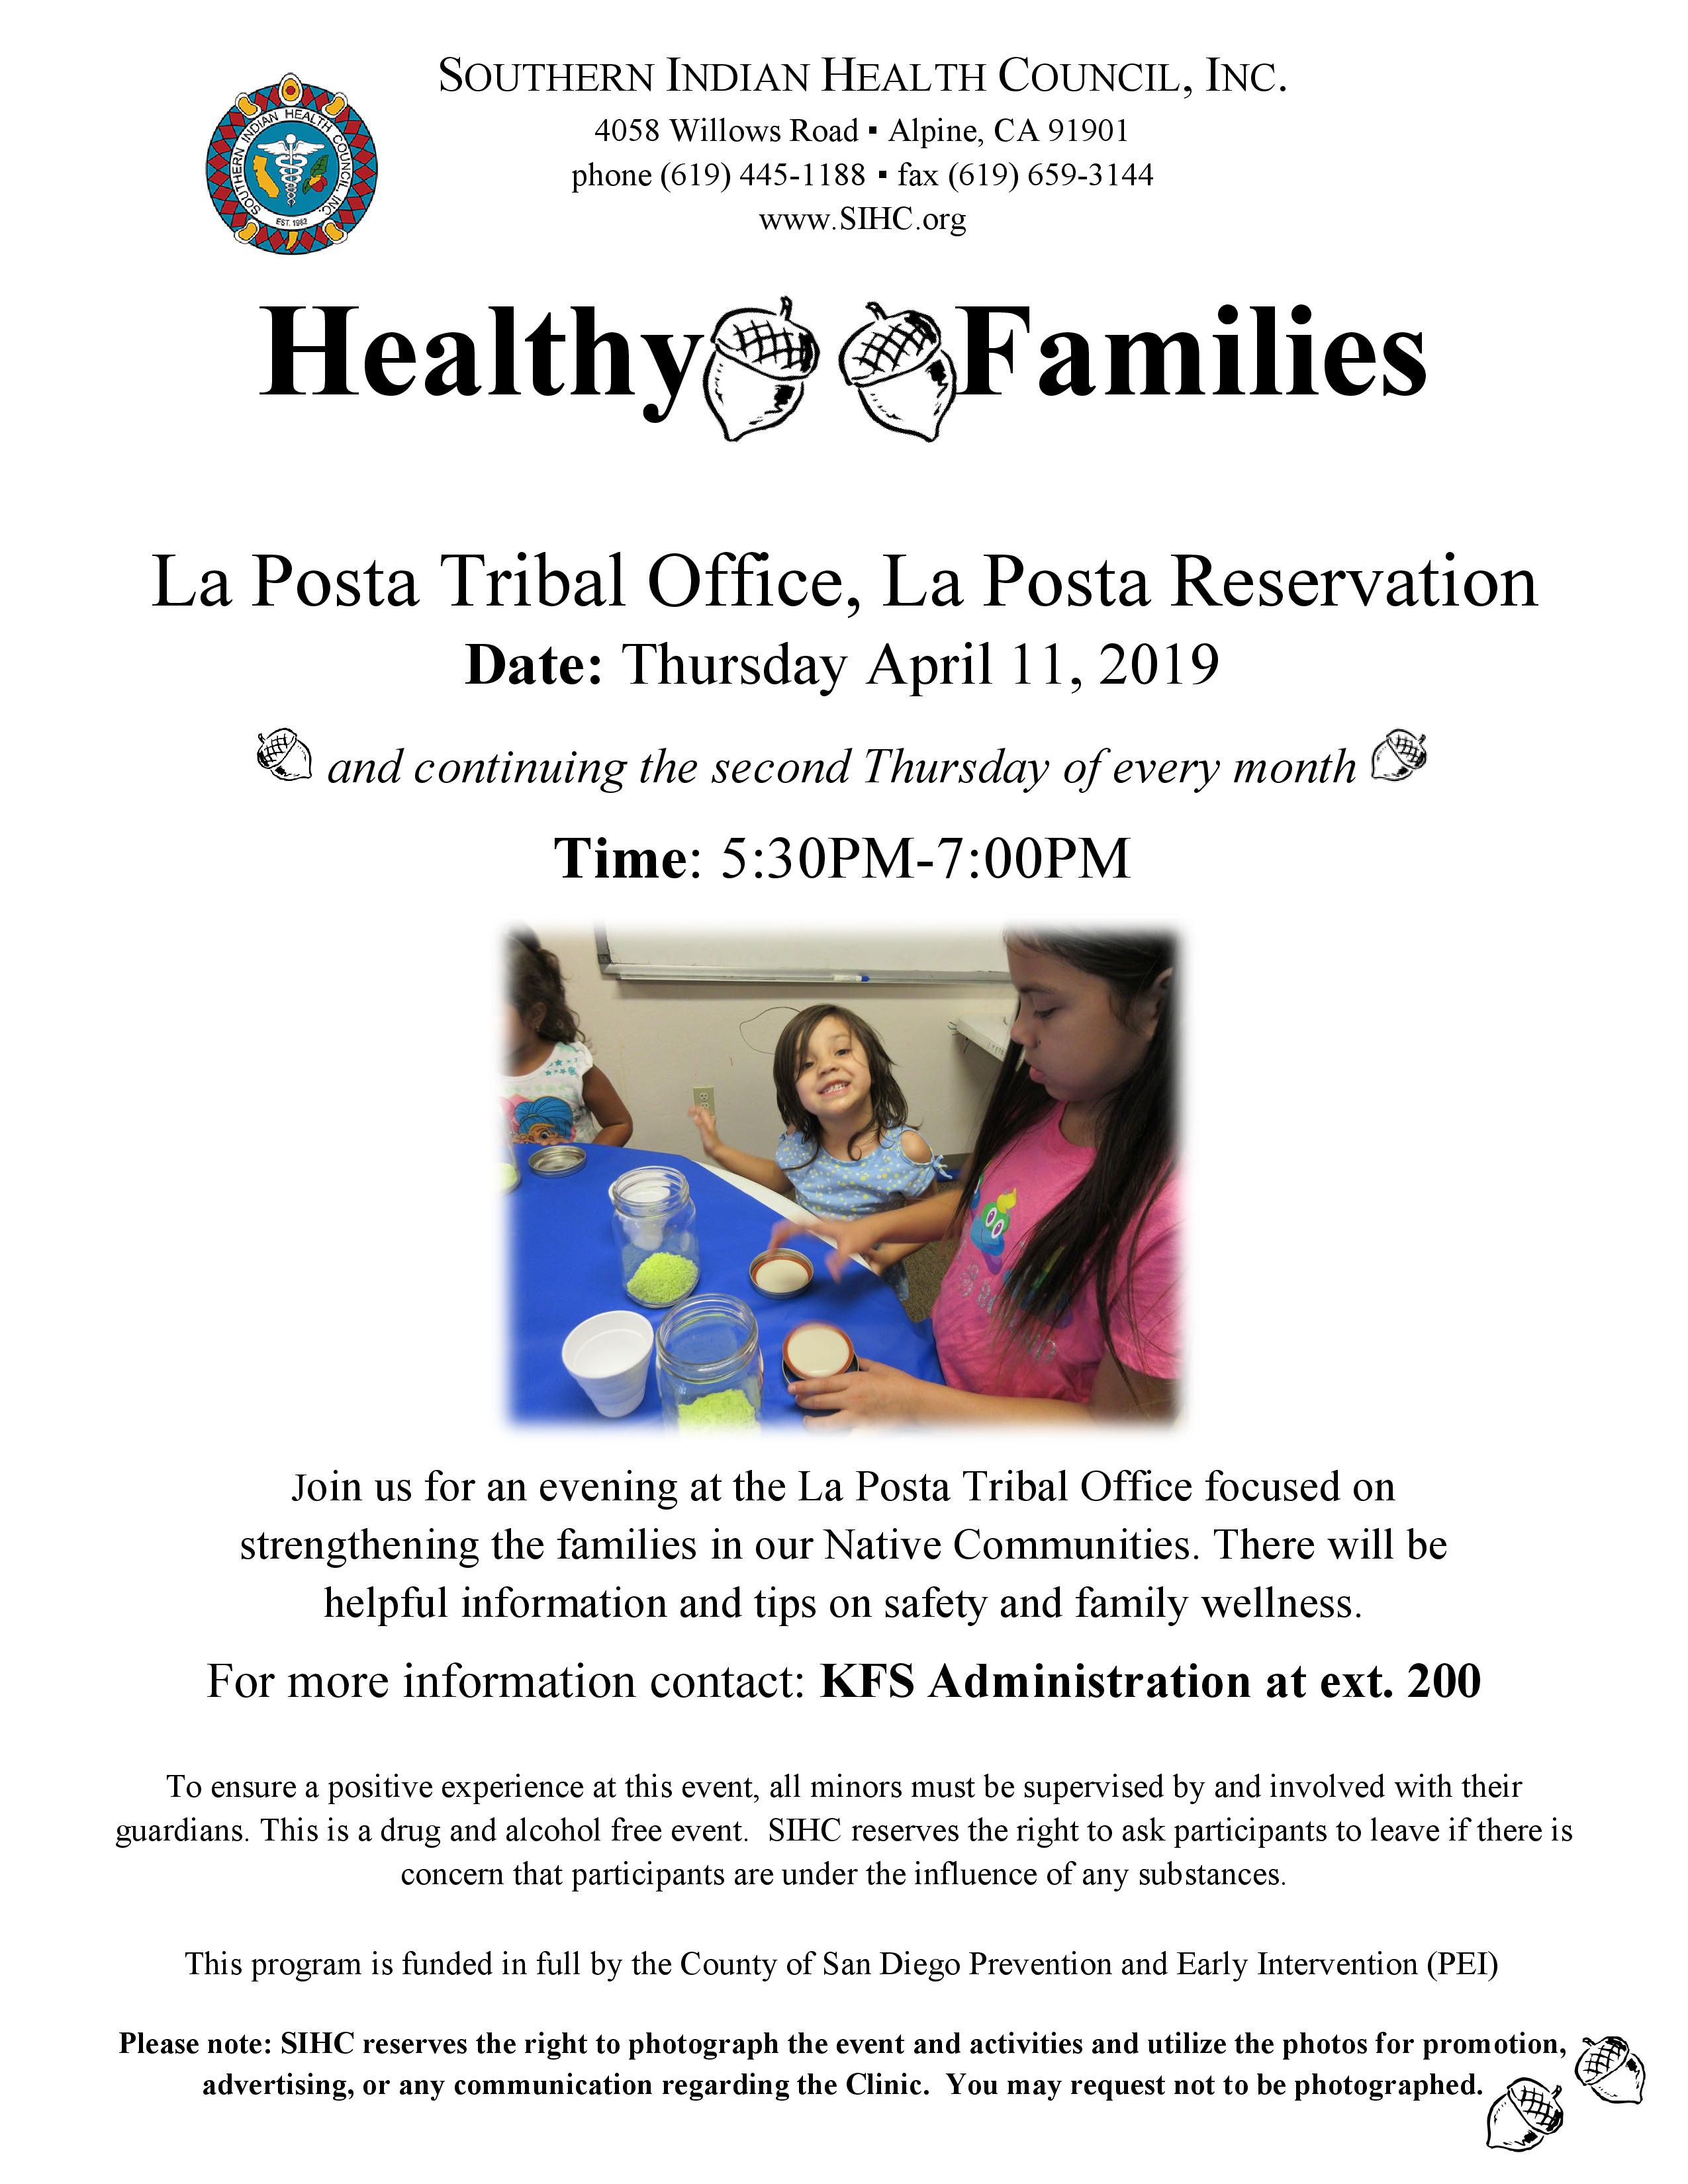 Flyer Healthy Families La Posta 4_11_19-page-001